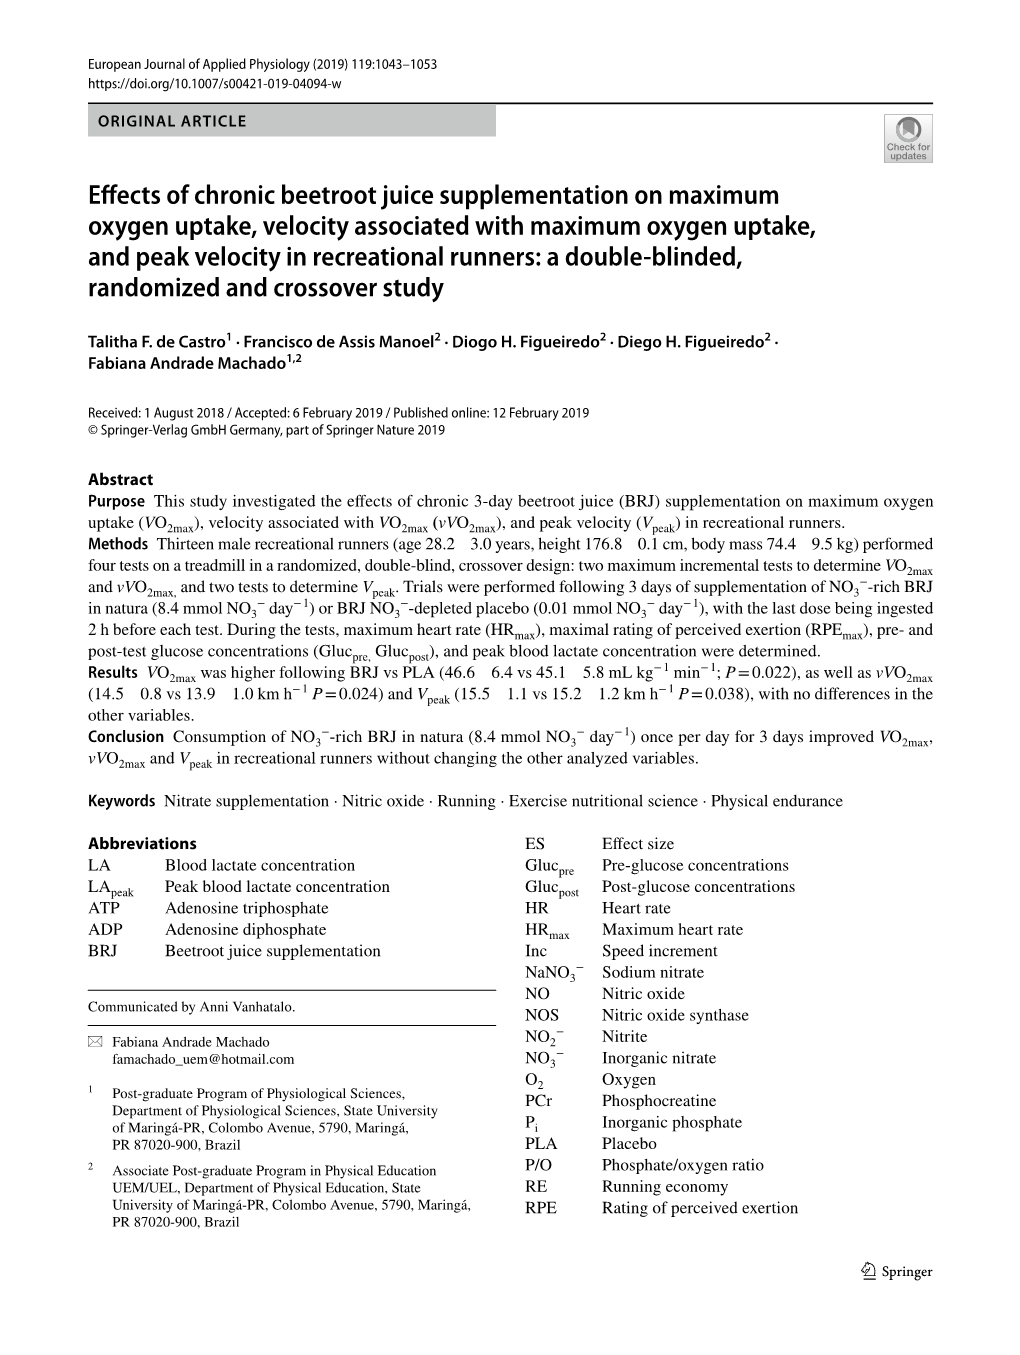 Effects of Chronic Beetroot Juice Supplementation on Maximum Oxygen Uptake, Velocity Associated with Maximum Oxygen Uptake